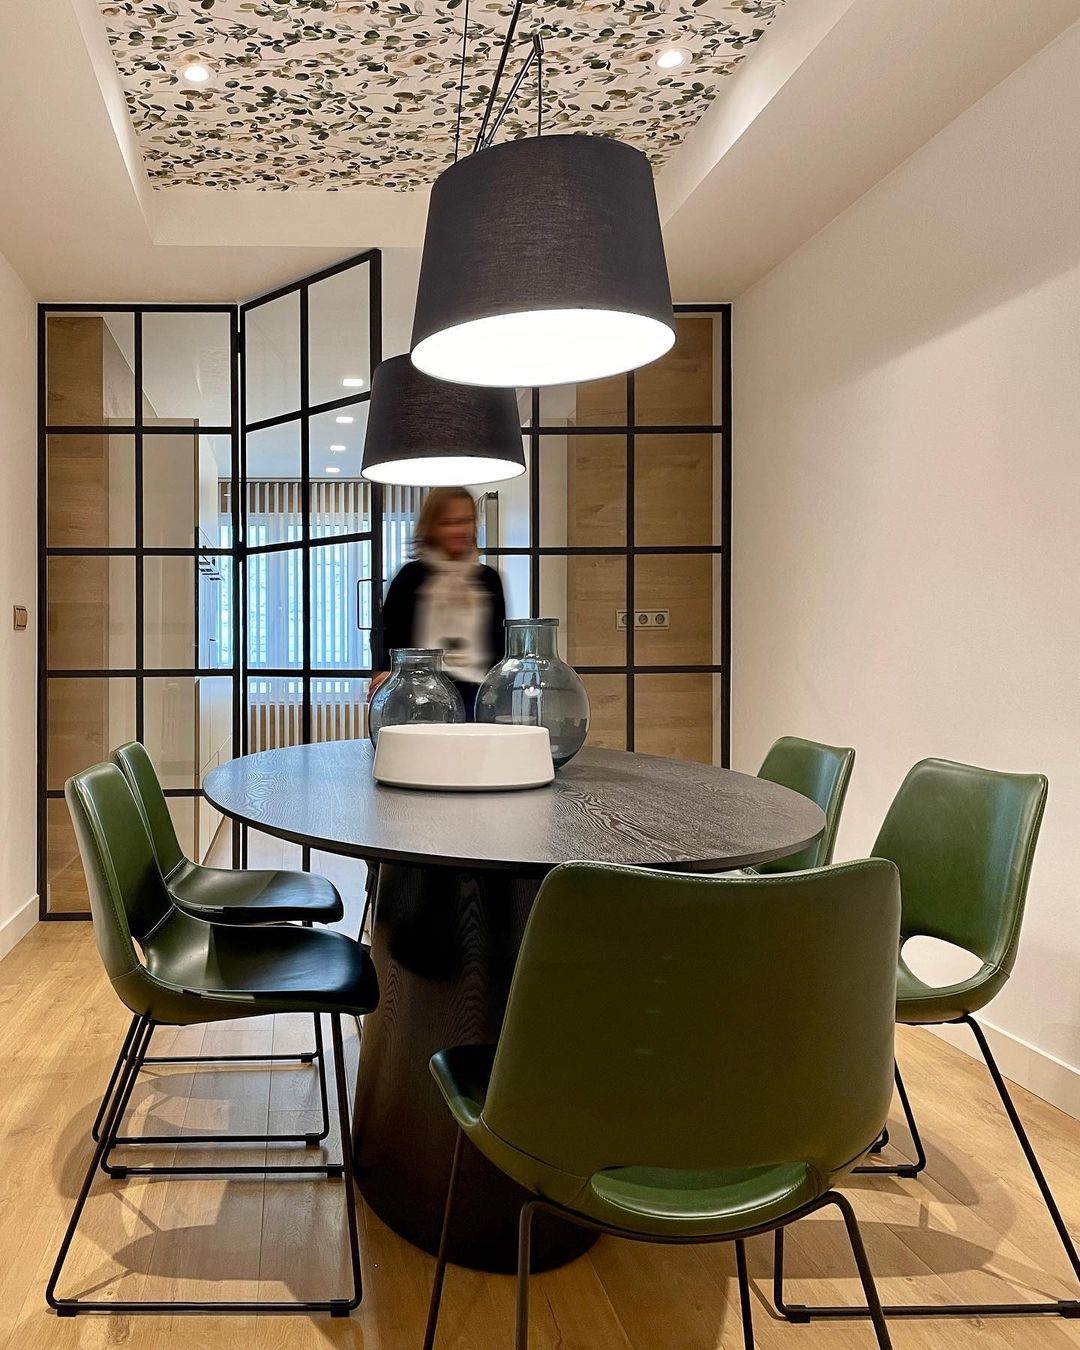 Mesa de comedor Oval fresno negro mate, 200 x 110cm, 34AC606N Vp  Interiorismo. - Electricidad Aranda Iluminación - Lámparas y Deco en  Almería -Tienda online